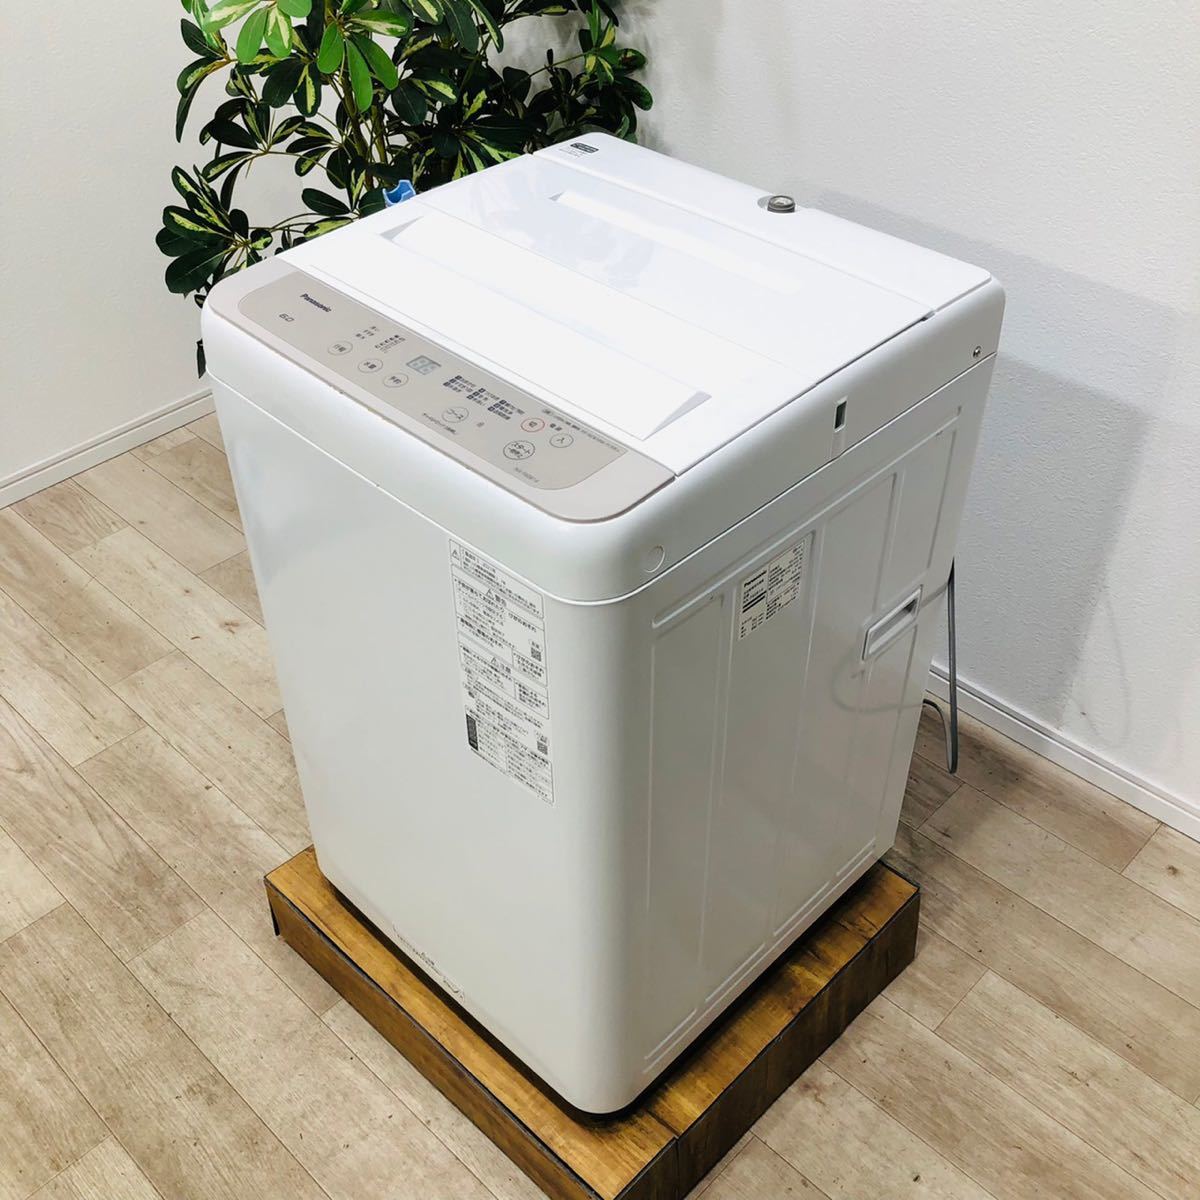 新品?正規品 Panasonic a1512 洗濯機 6.0kg 2021年製 11 5kg以上